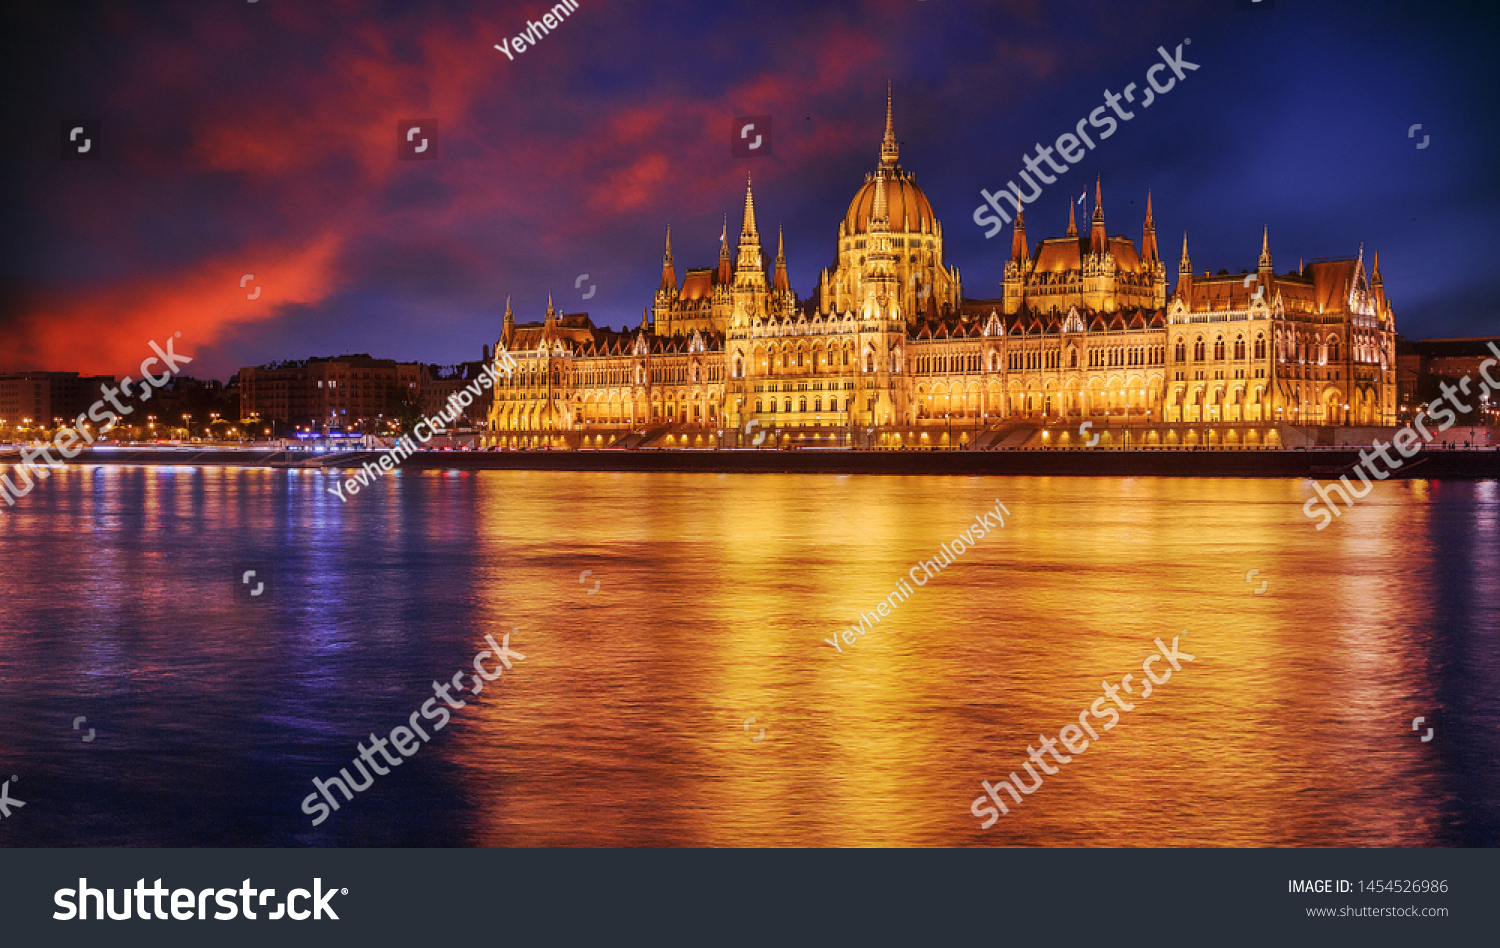 日没時に色とりどりのドラマチックな空を持つブダペストの 反射を持つハンガリー議会の風景画 ブダペストの街並みを眺める素晴らしい景色 素晴らしい絵のような風景 人気の旅行先 の写真素材 今すぐ編集